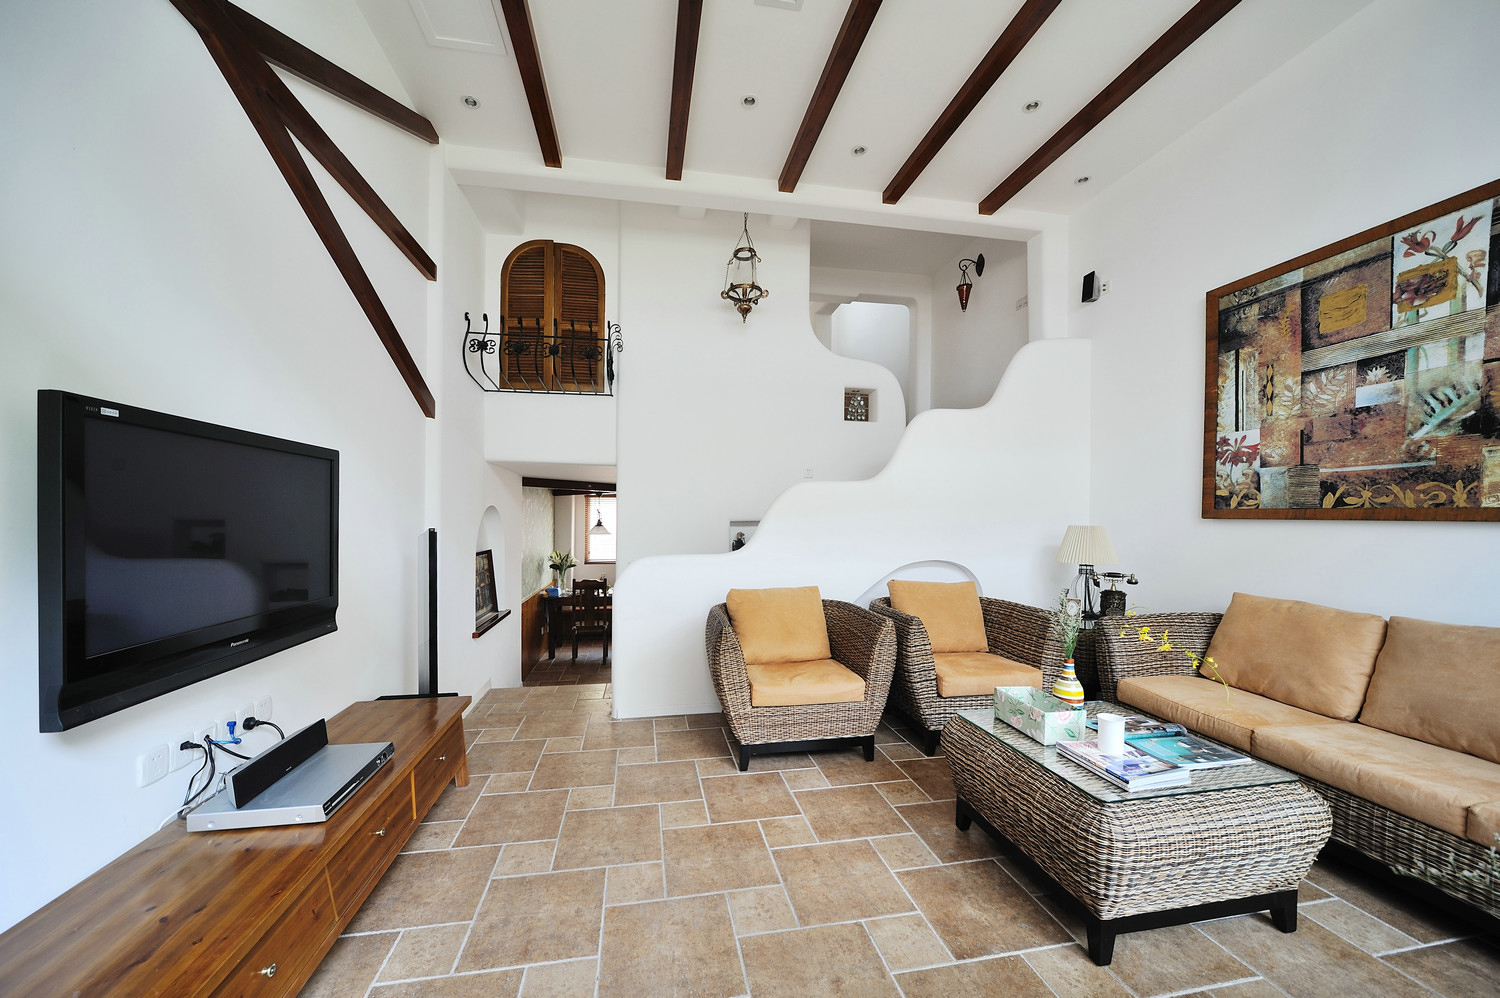 地中海特色及精致文化品位的家居设计方式，多适宜喜欢静谧与雅致、文化修养较高的成功人士。